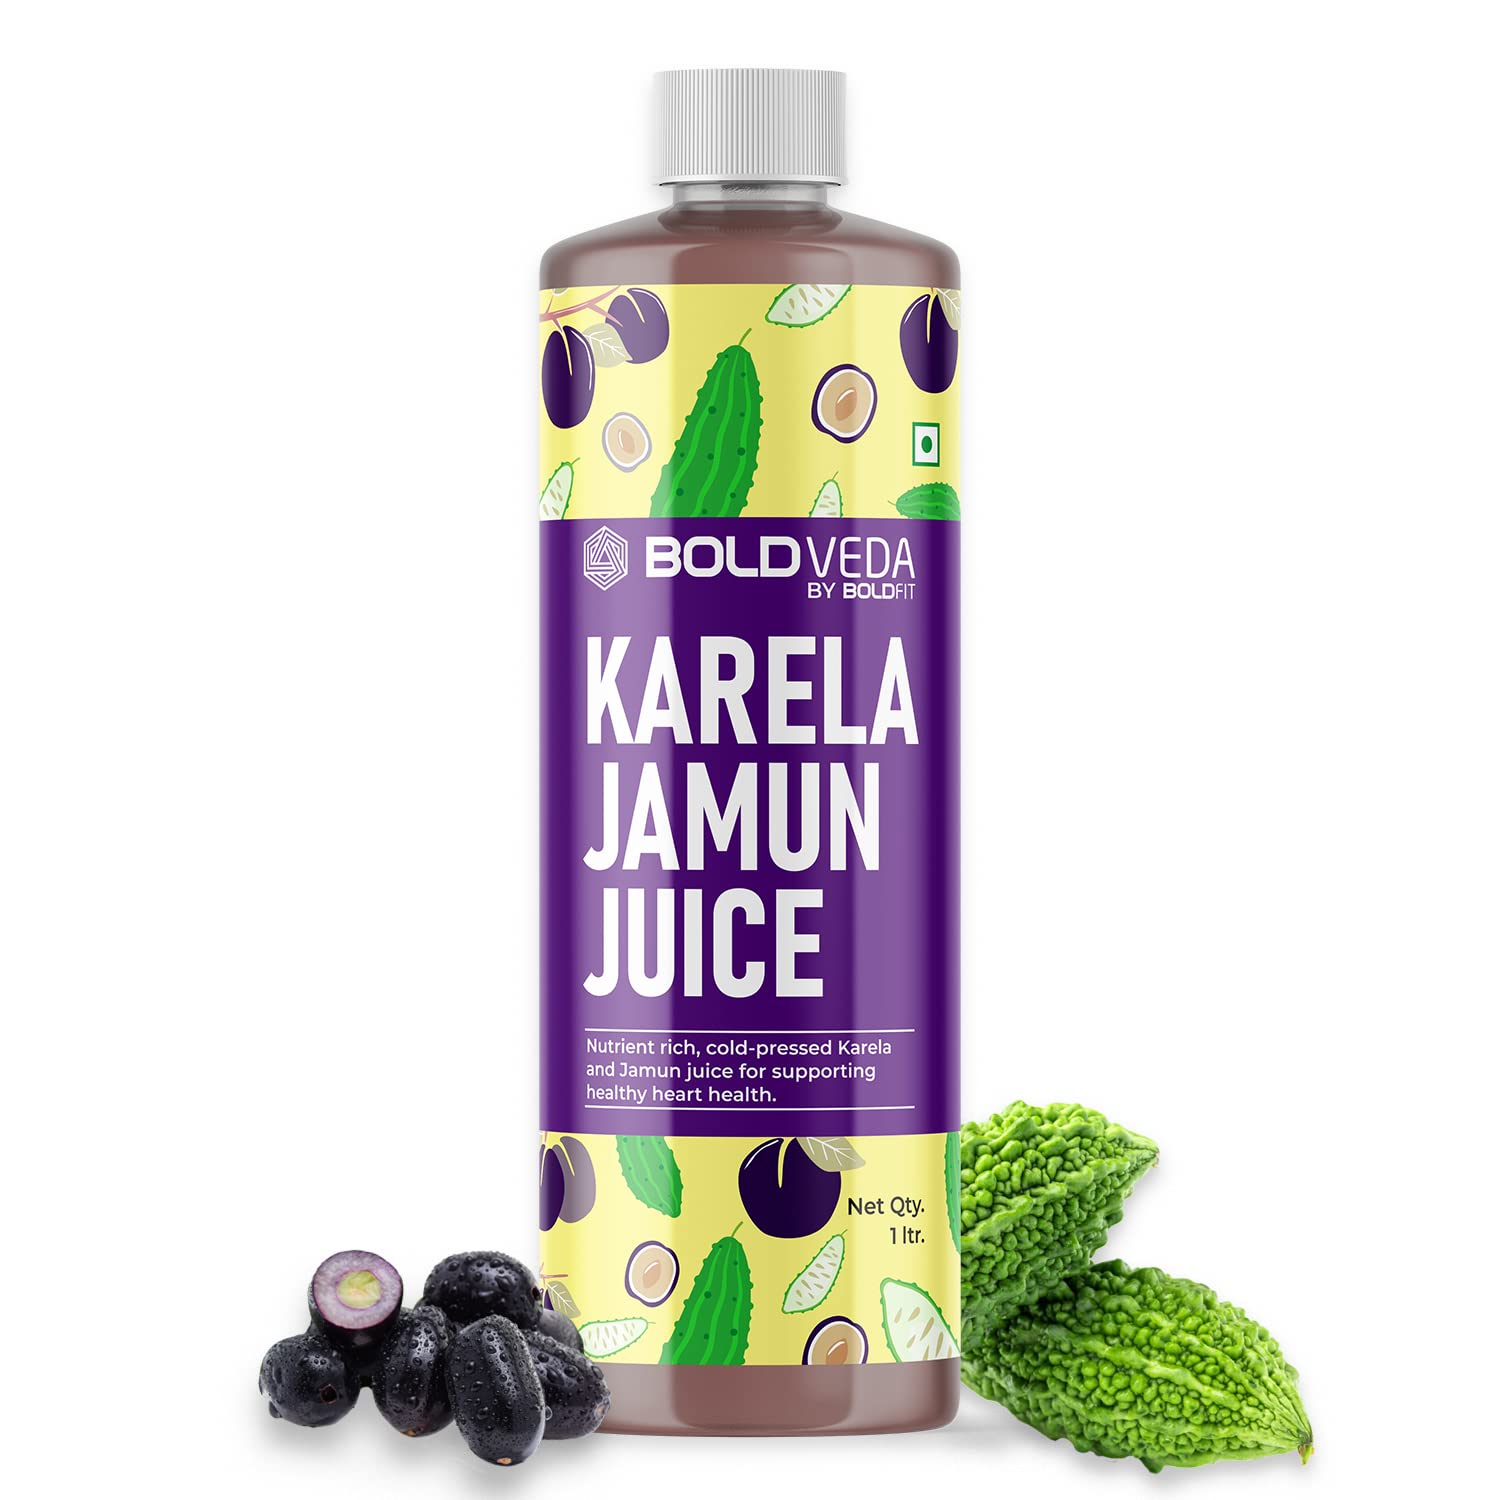 Karela Jamun Juice 1 Ltrs